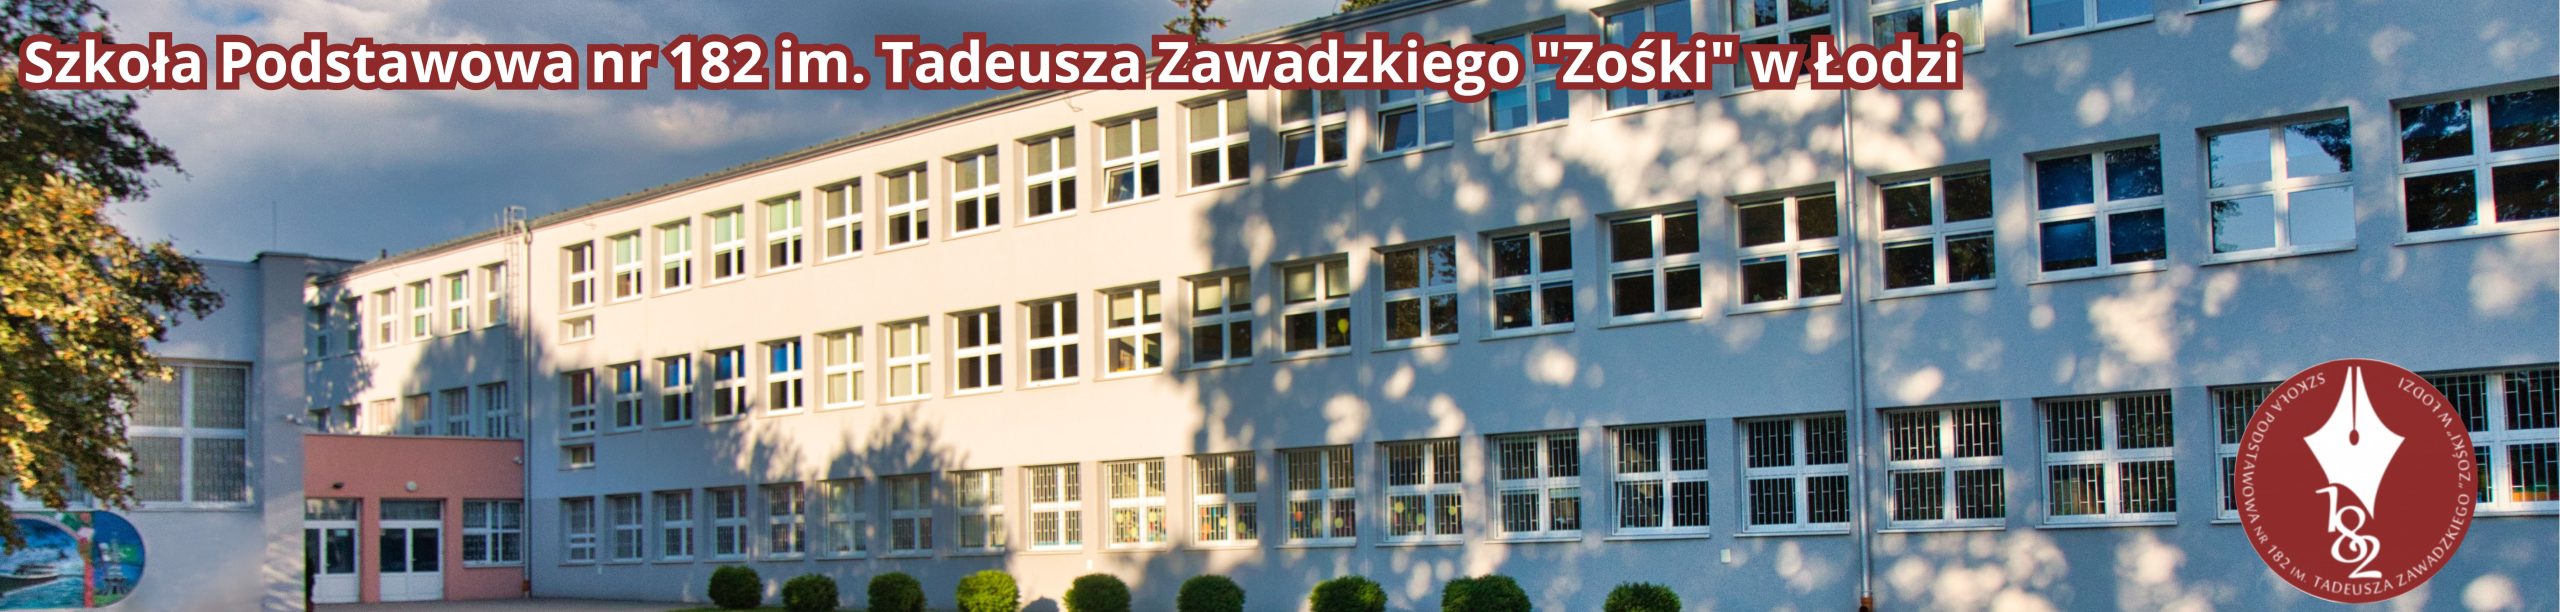 zdjęcie budynku szkoły, logo bordowe szkoły i napis Szkoła Podstawowa nr 182 im. Tadeusza Zawadzkiego "Zośki" w Łodzi